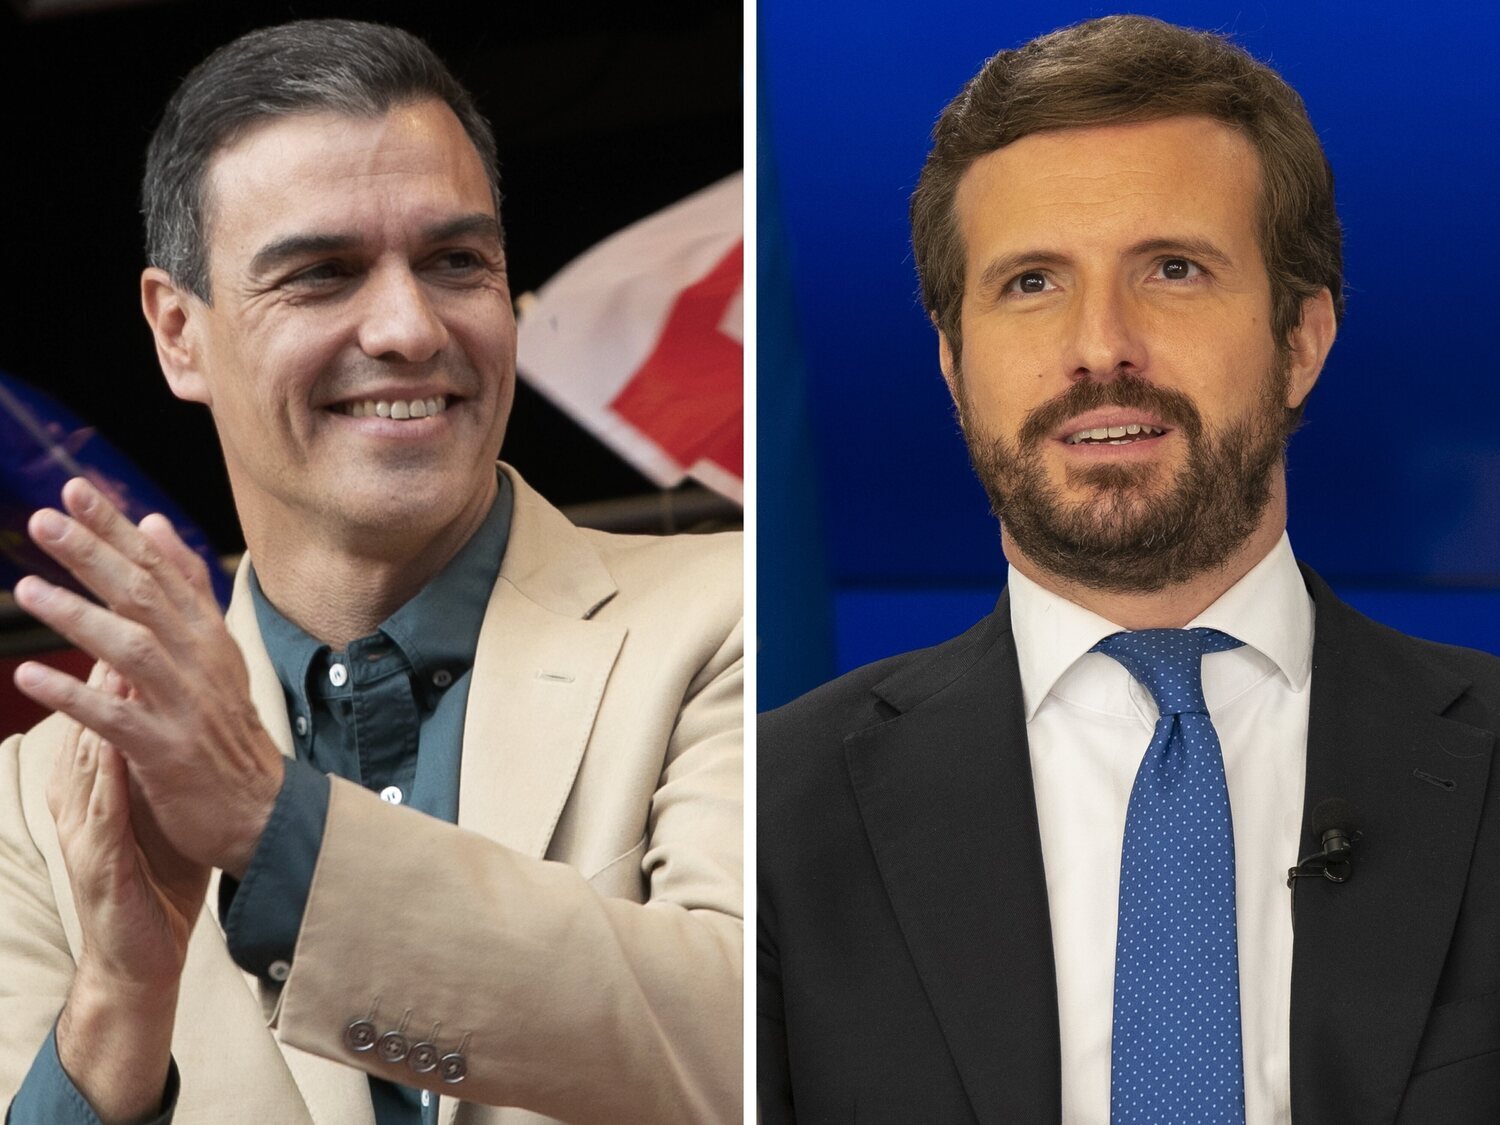 La épica de Pedro Sánchez y el espejo para Pablo Casado: ¿Volverá a la presidencia tras su dimisión?